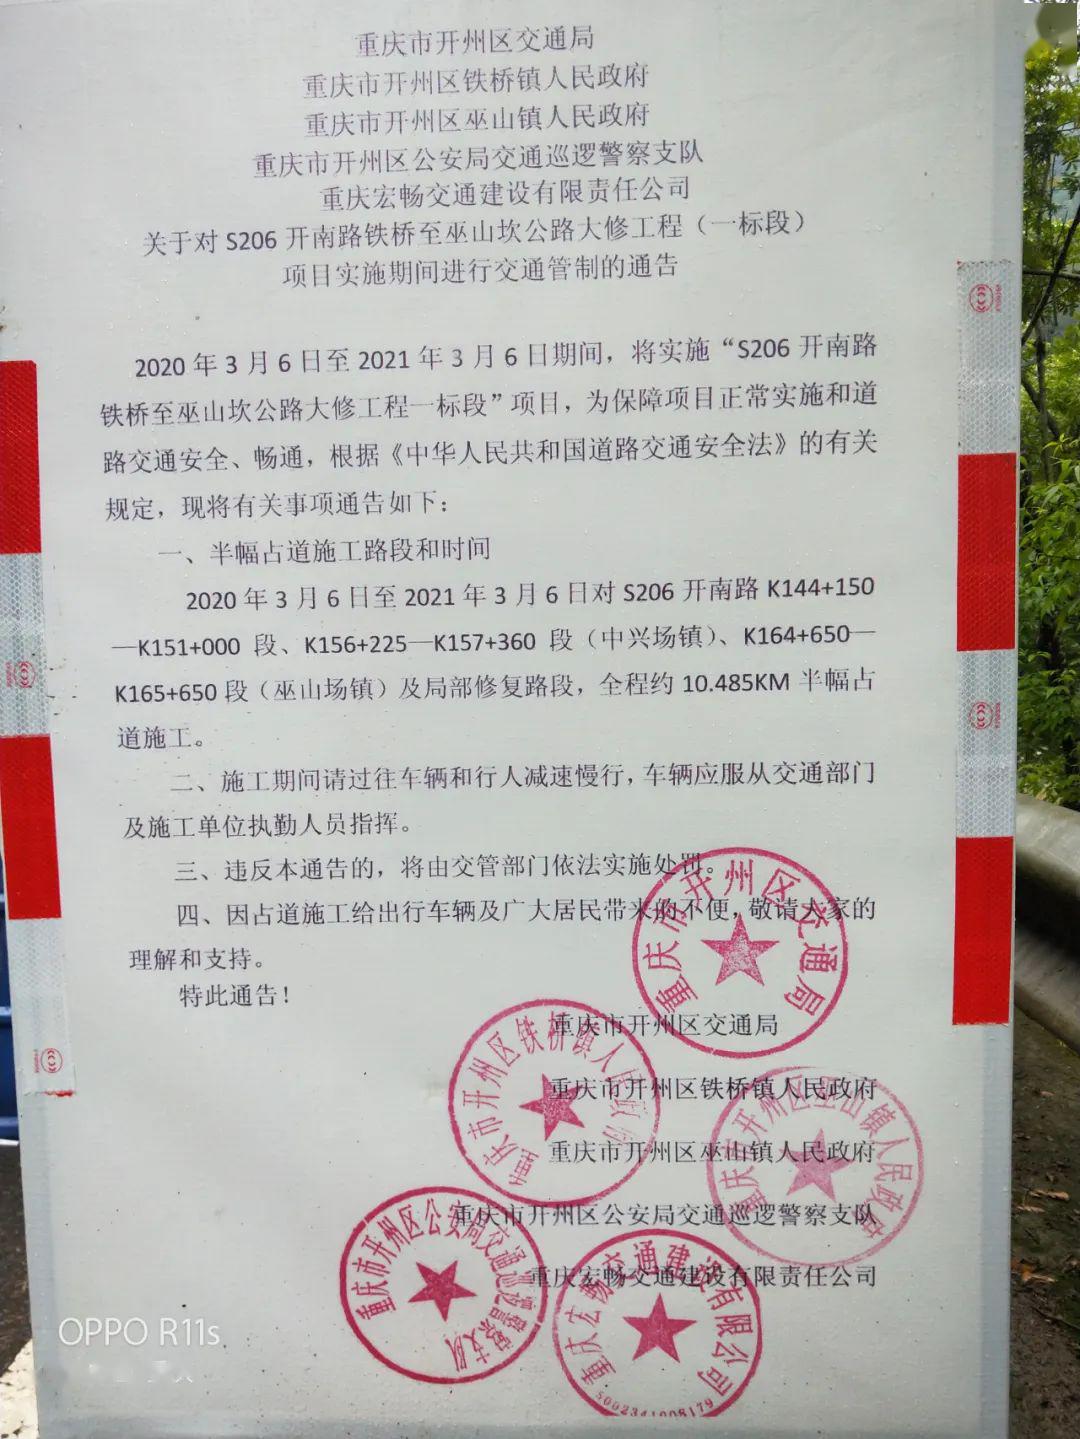 重庆宏畅交通建设有限责任公司重庆市开州区公安局交通巡逻警察支队